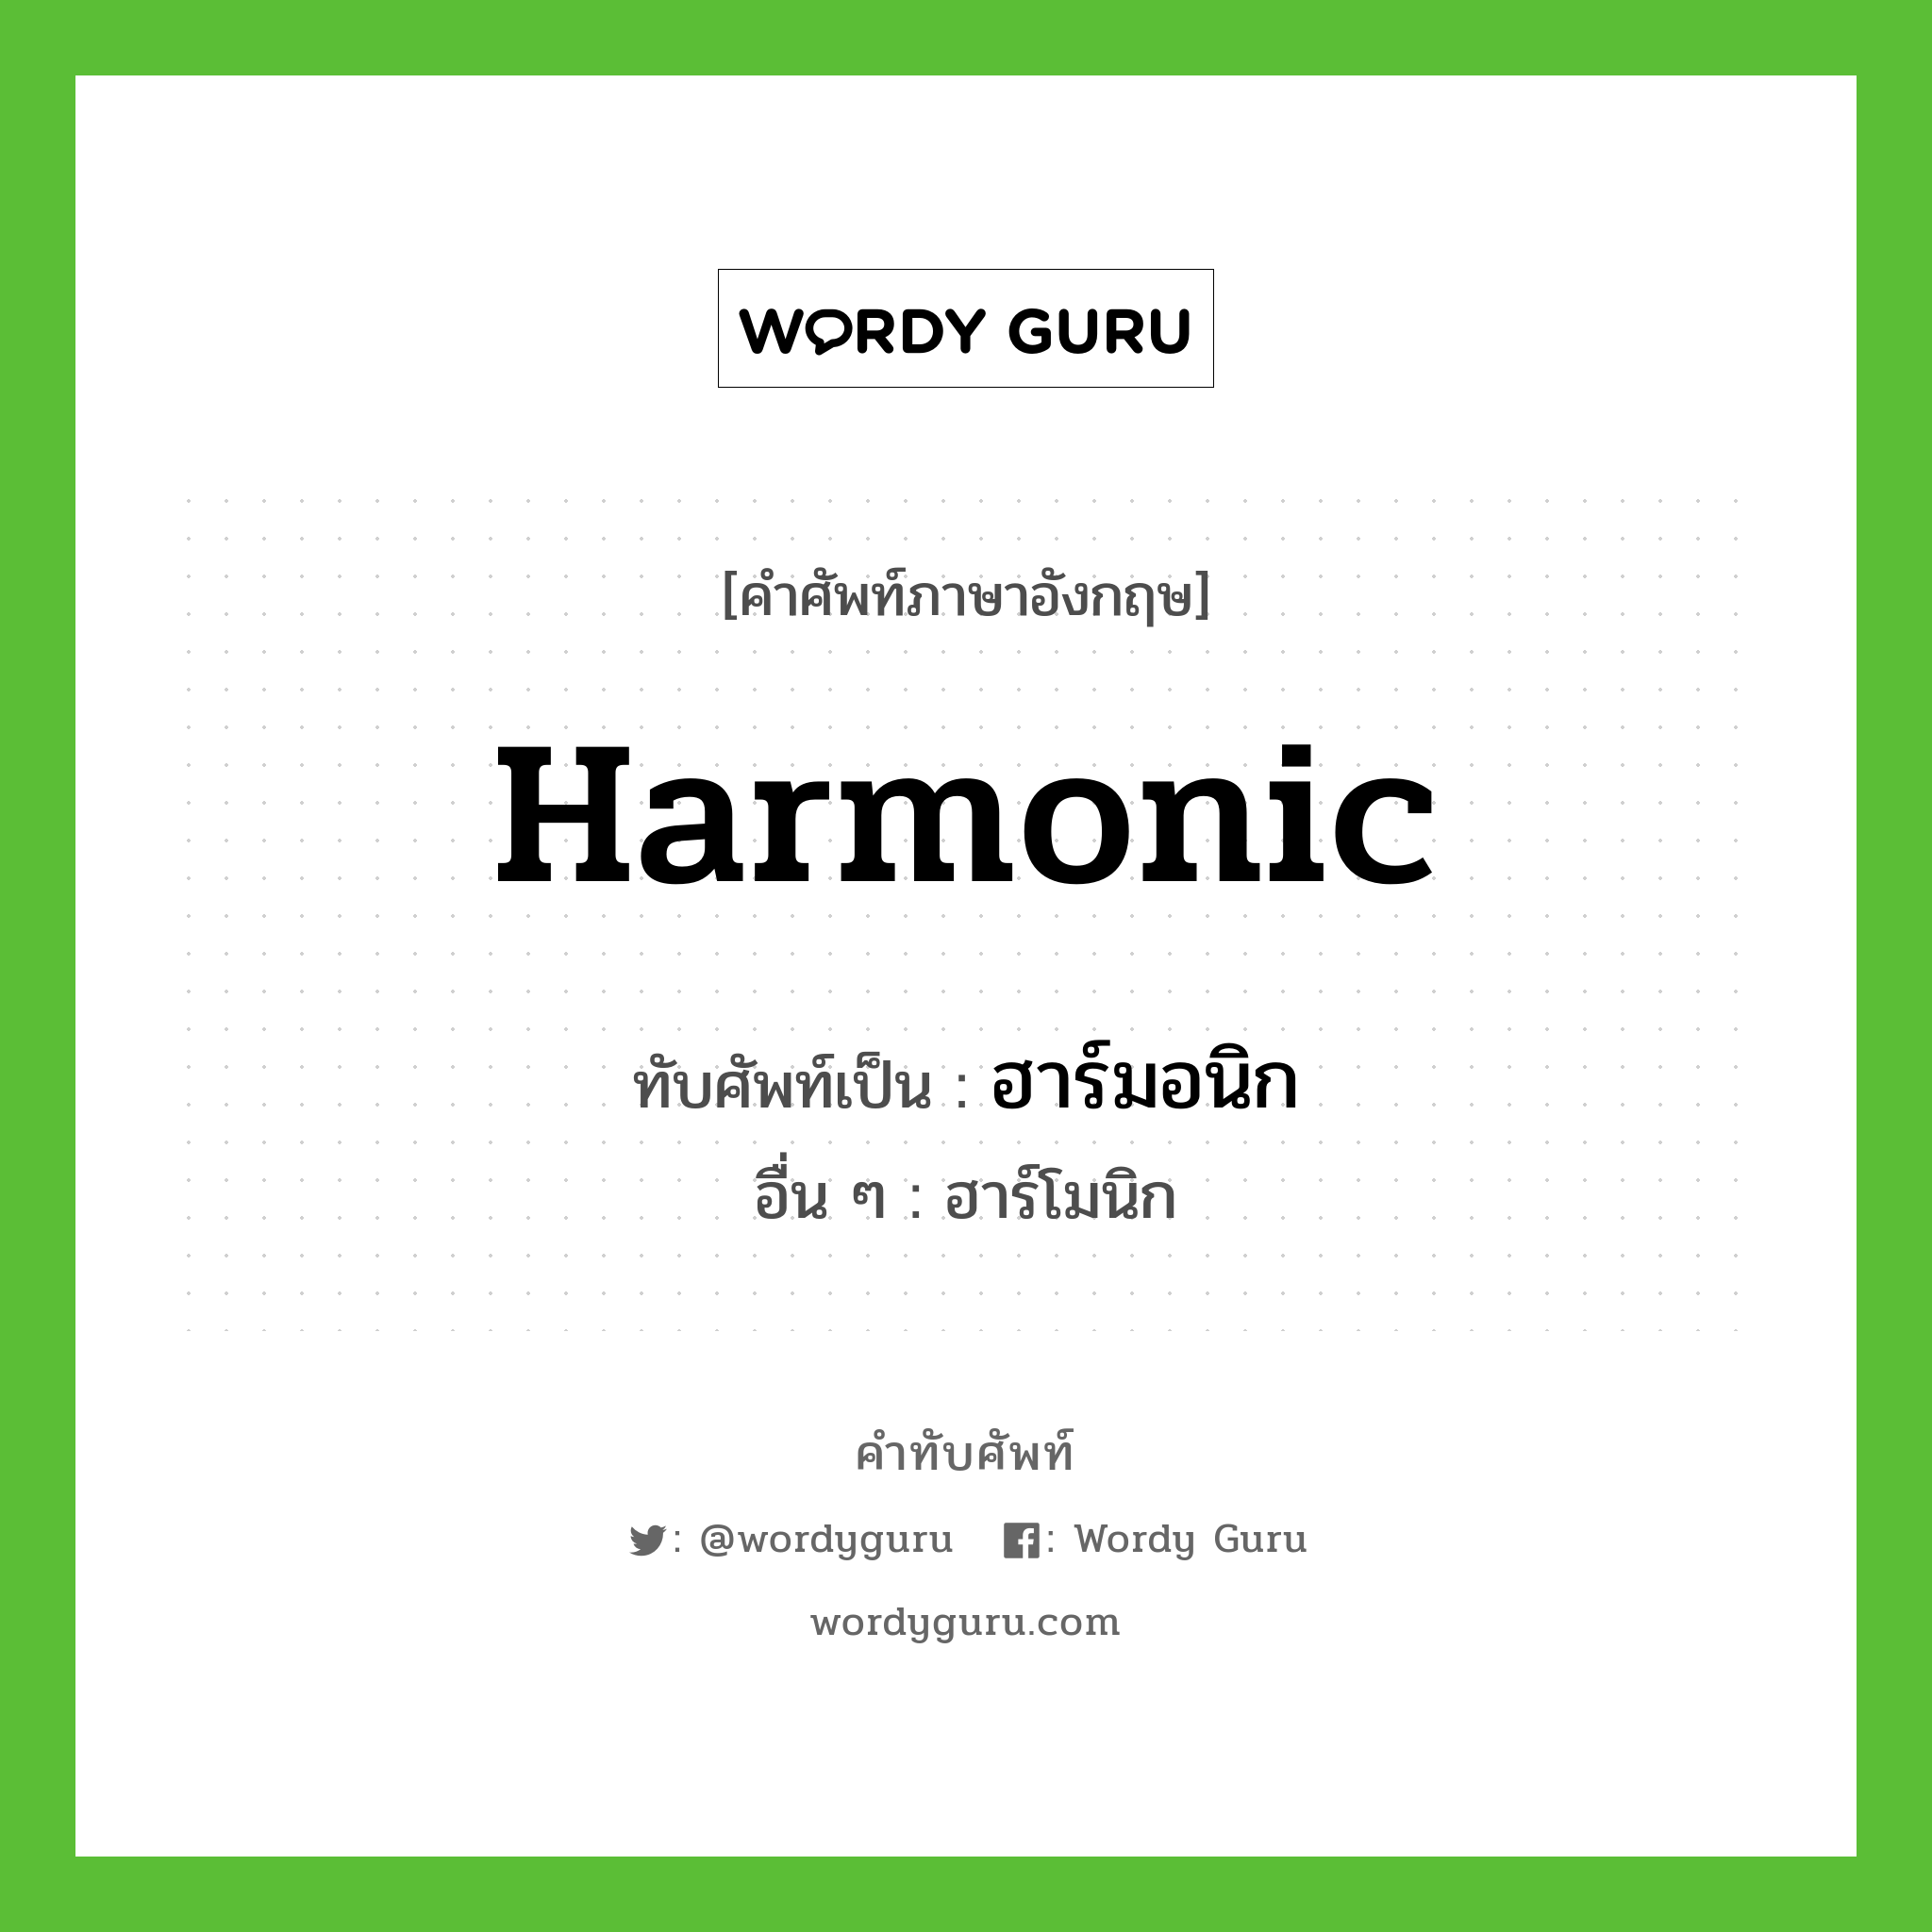 ฮาร์มอนิก เขียนอย่างไร?, คำศัพท์ภาษาอังกฤษ ฮาร์มอนิก ทับศัพท์เป็น harmonic อื่น ๆ ฮาร์โมนิก